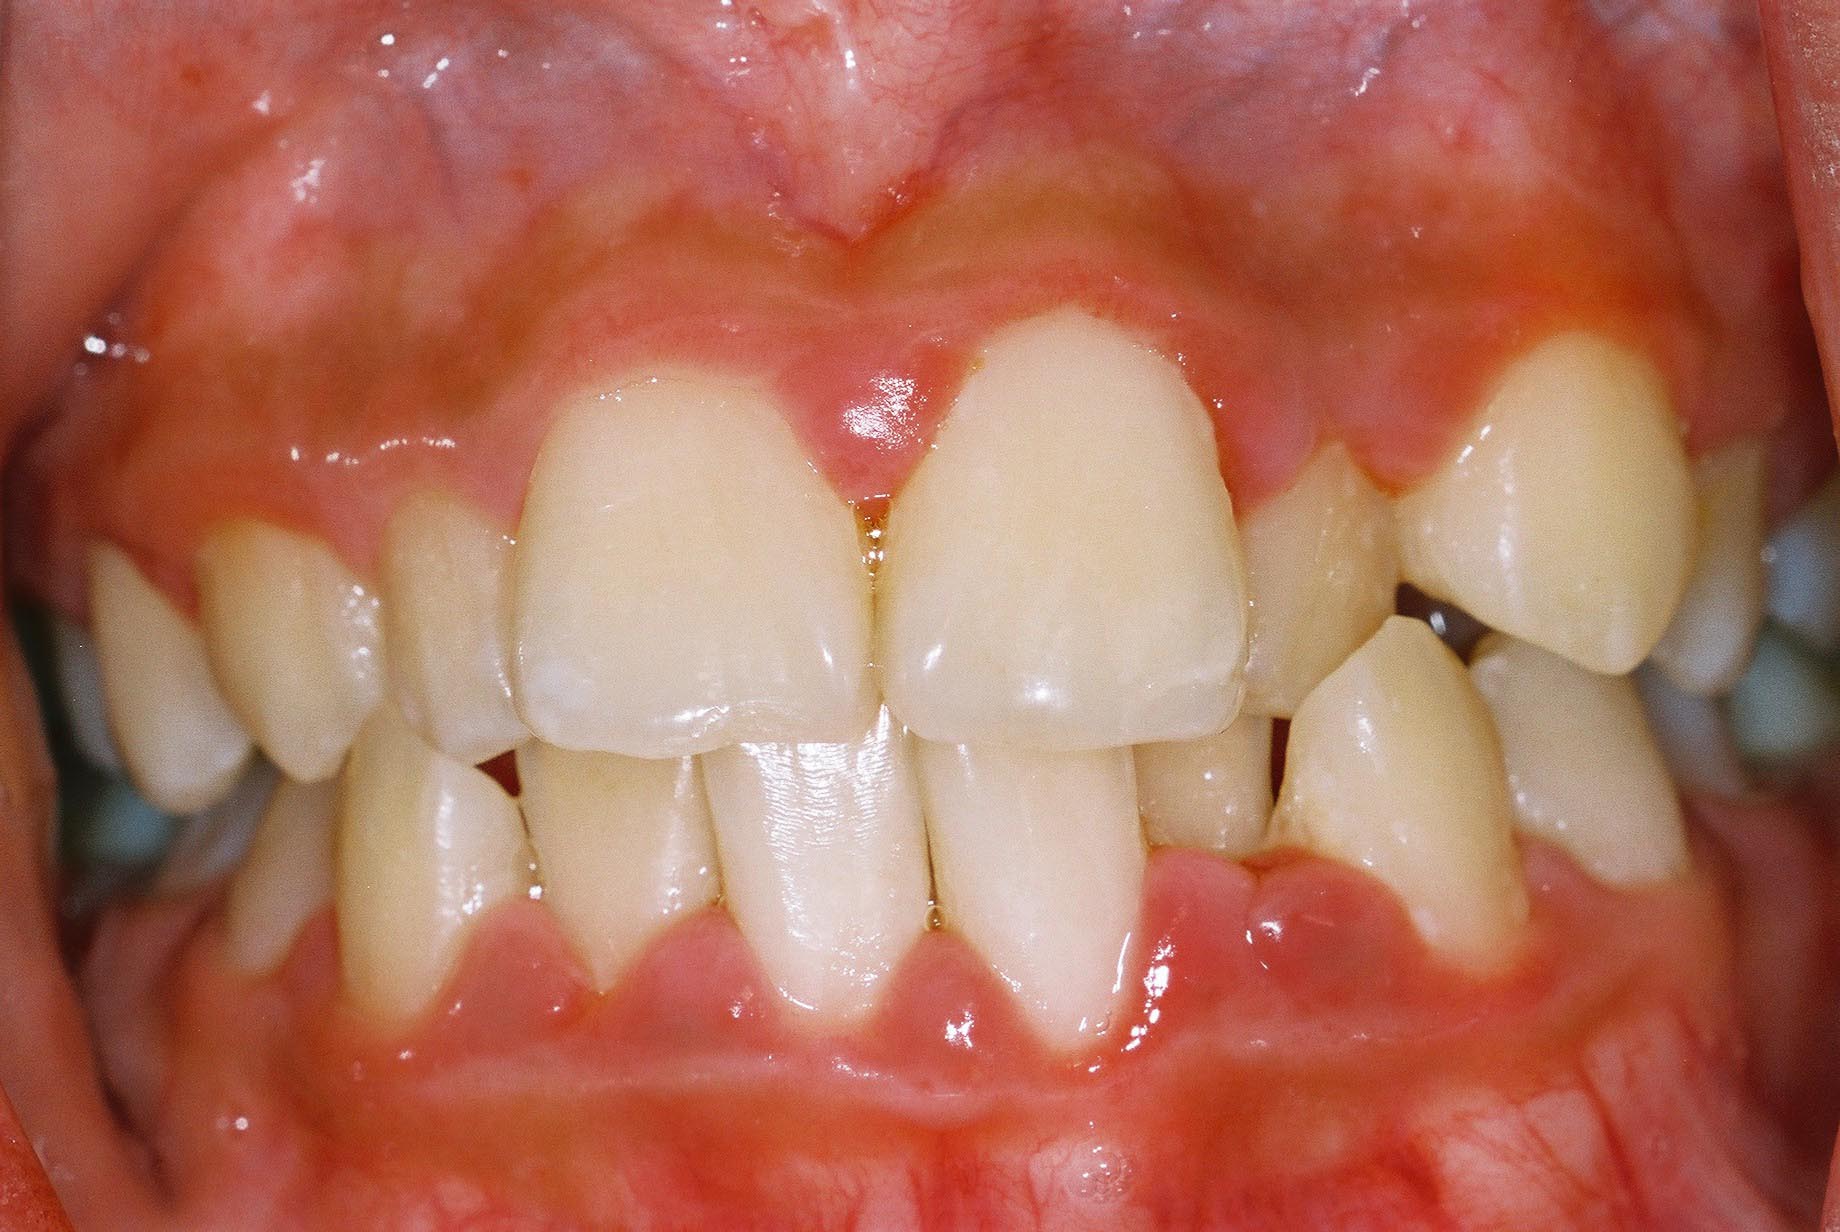 irregular teeth